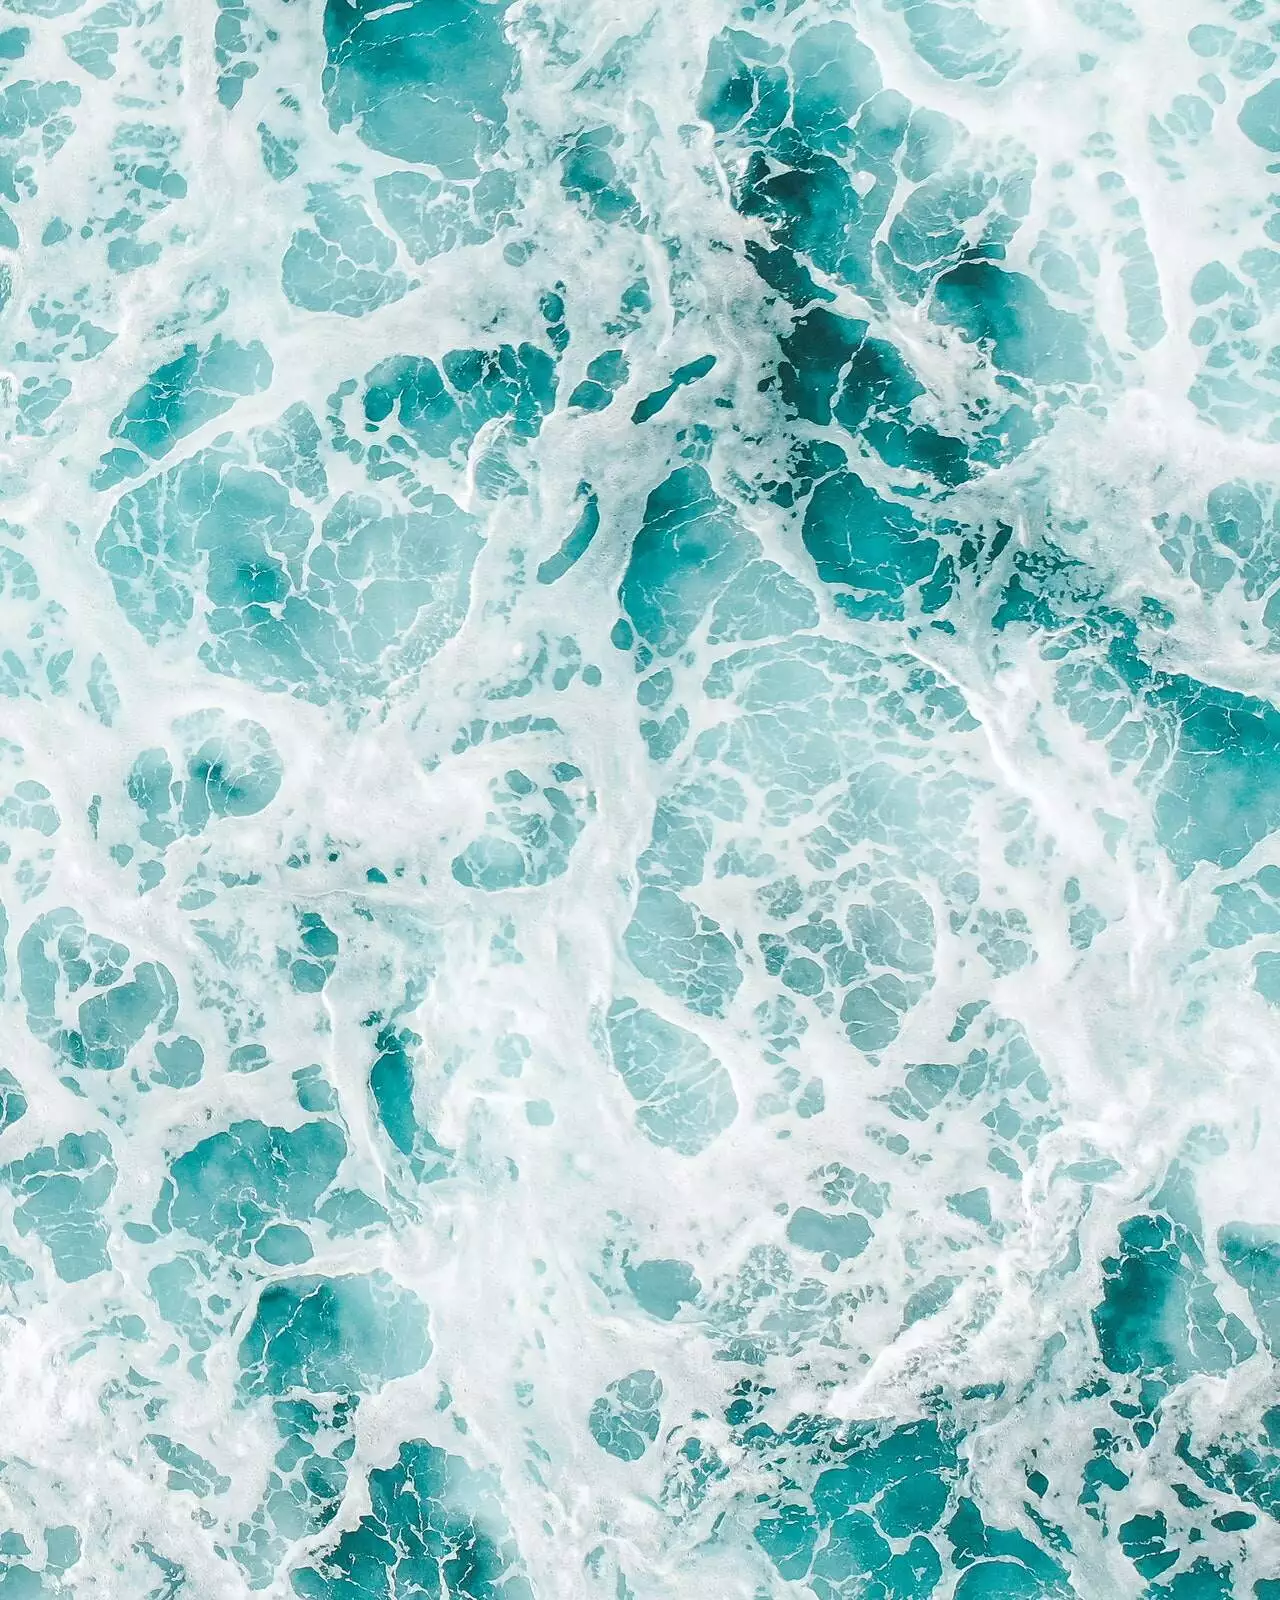 image of ocean waves